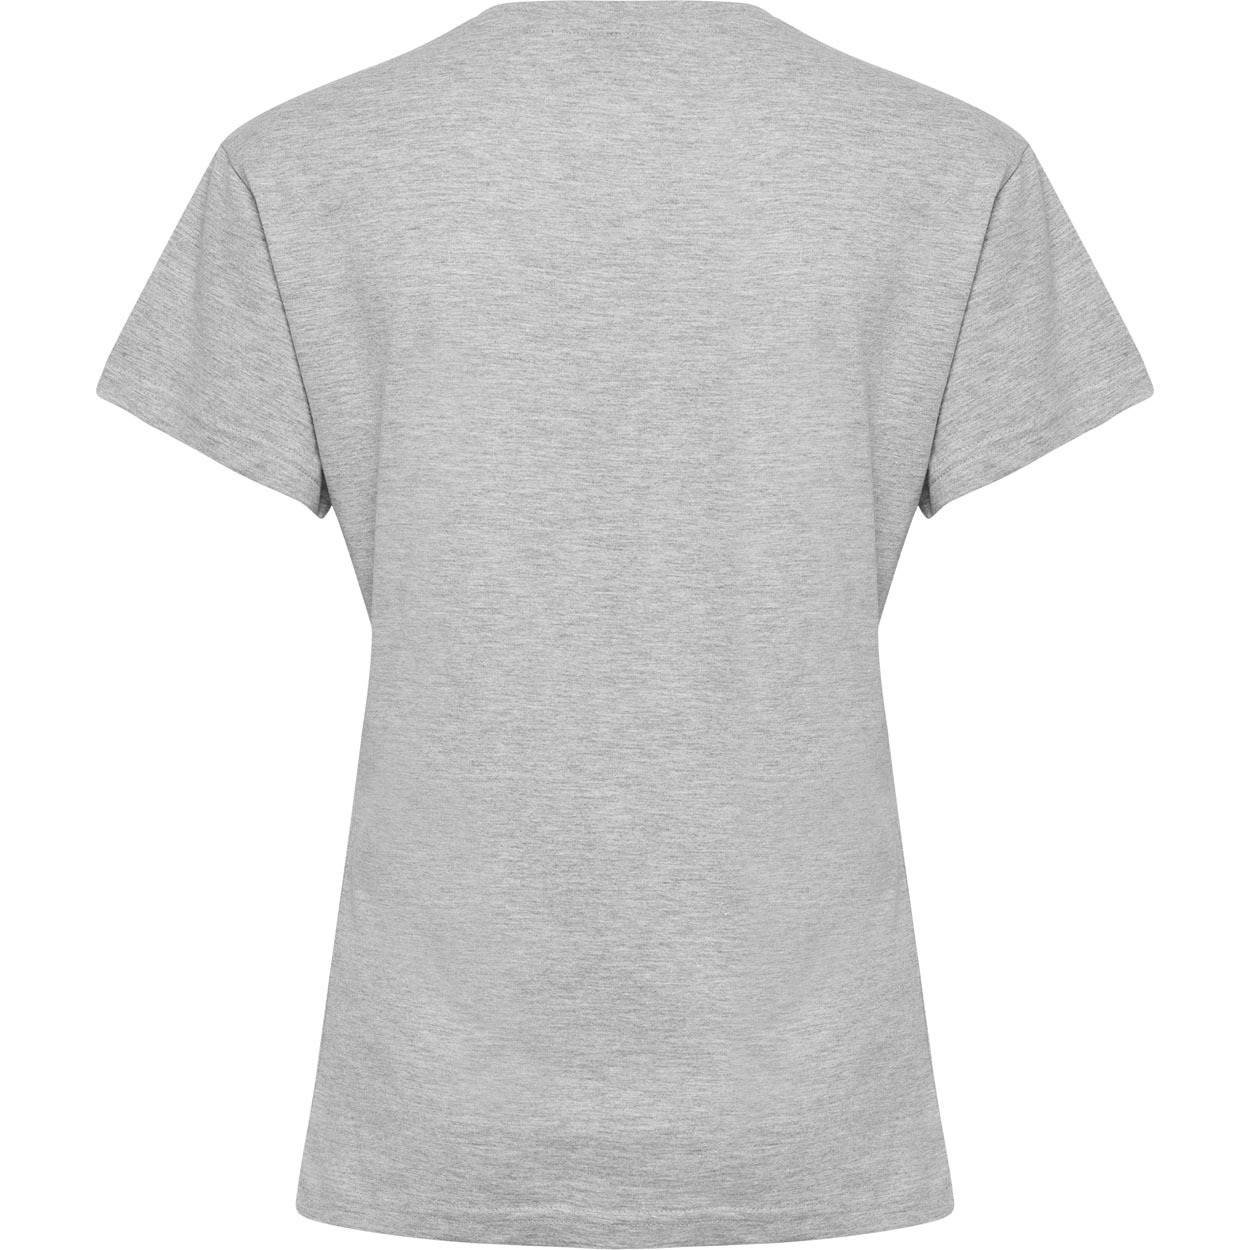 T-shirt femme Hummel Cotton Logo